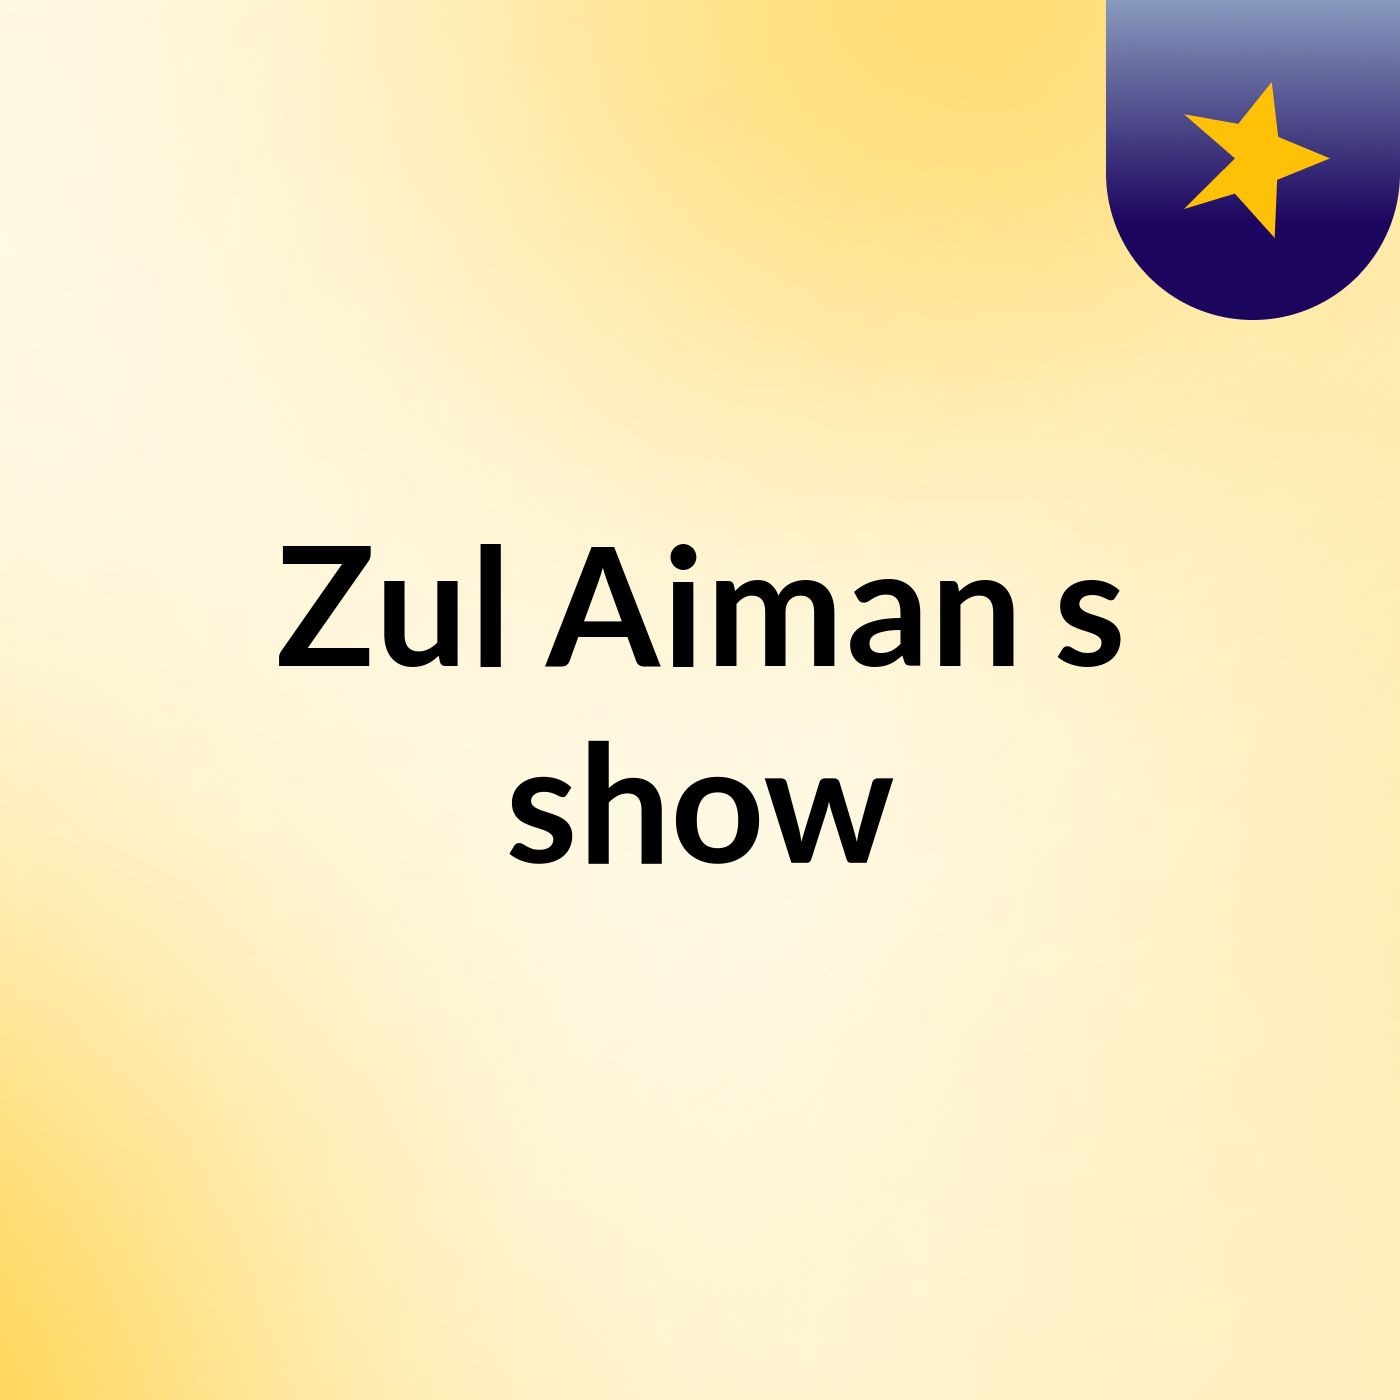 Zul Aiman's show